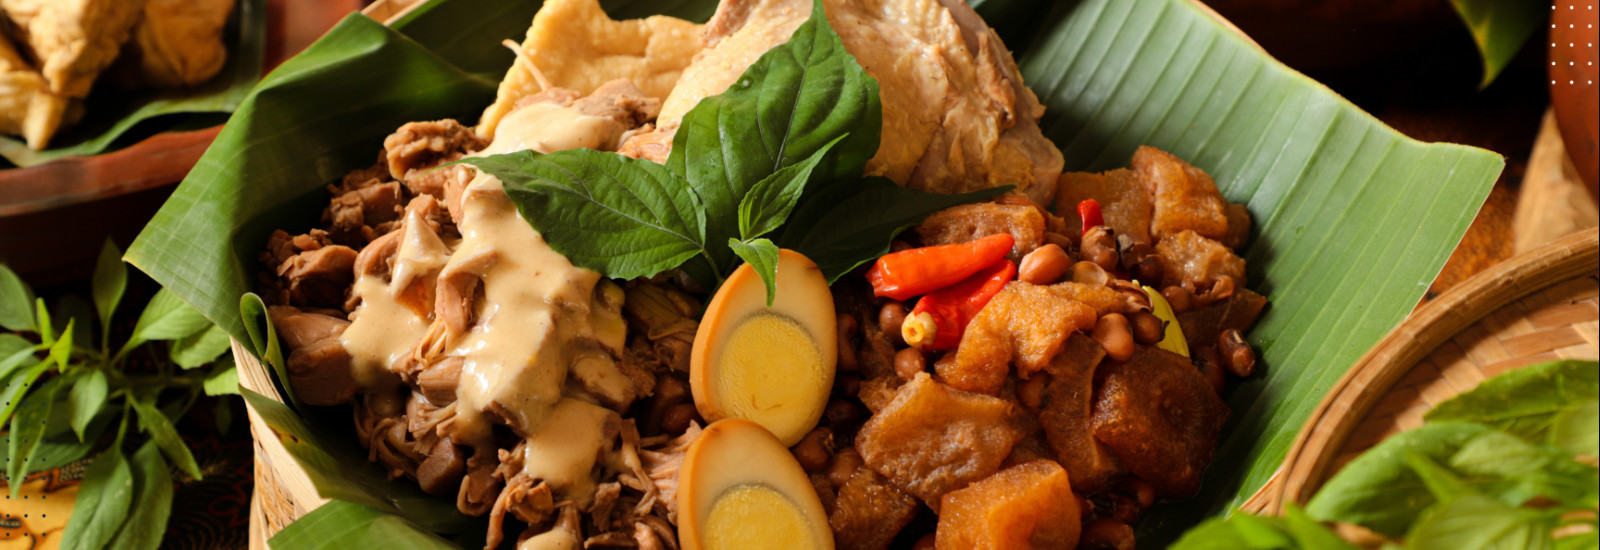 Gudeg yu djum jogja kendil kuliner khas Yogyakarta